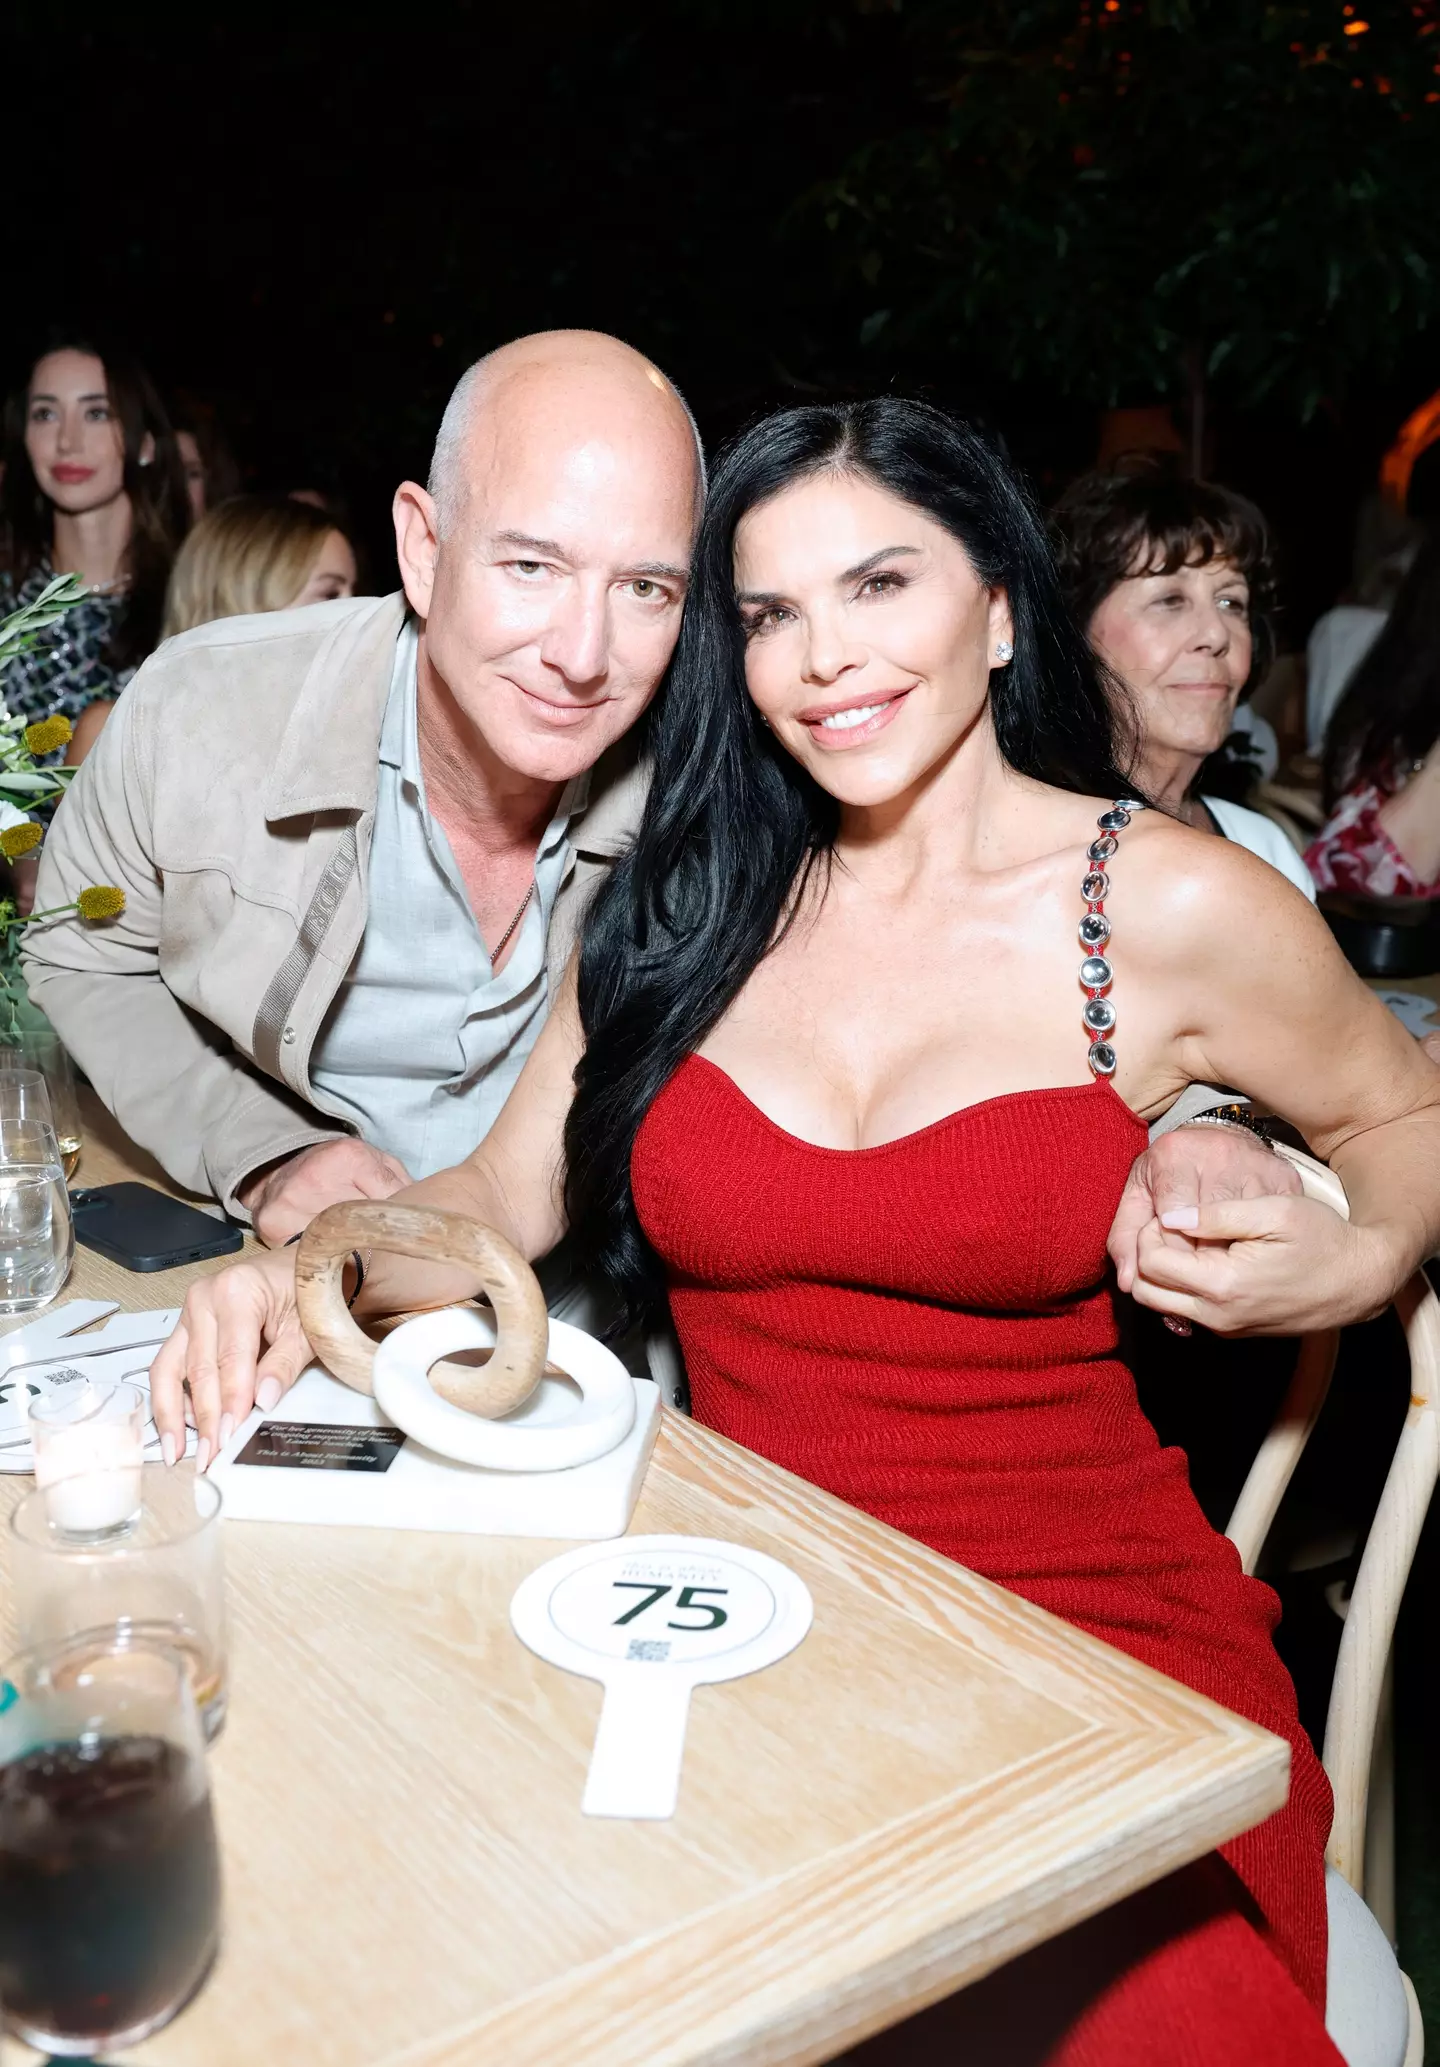 Jeff Bezos pictured with his fiancée, Lauren Sánchez.